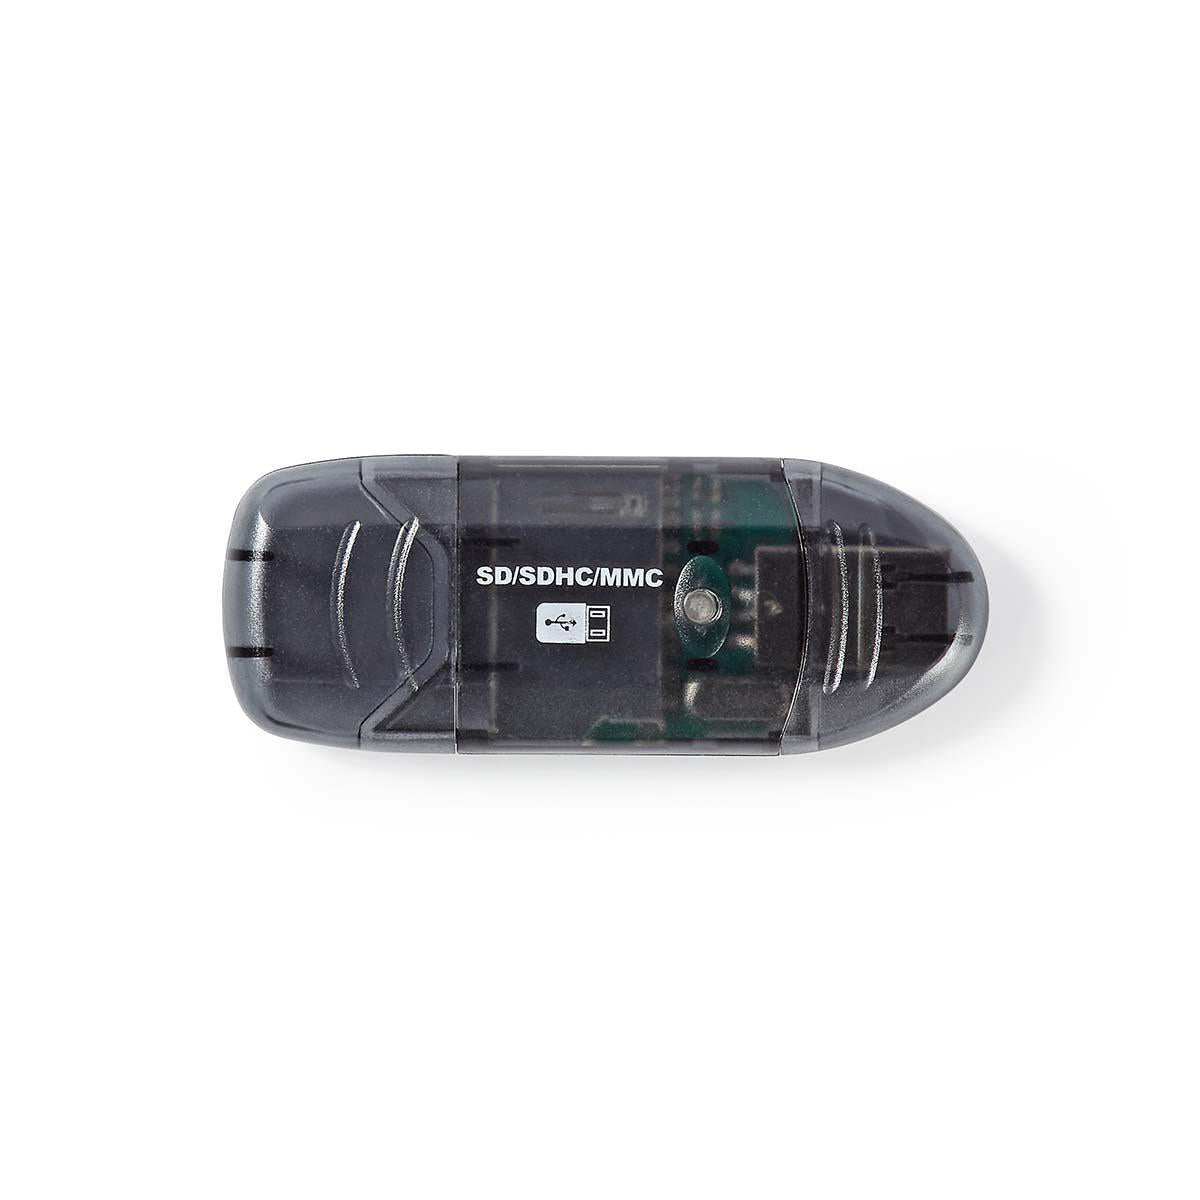 Kartenleser | MMC / SD / SDHC | USB 2.0